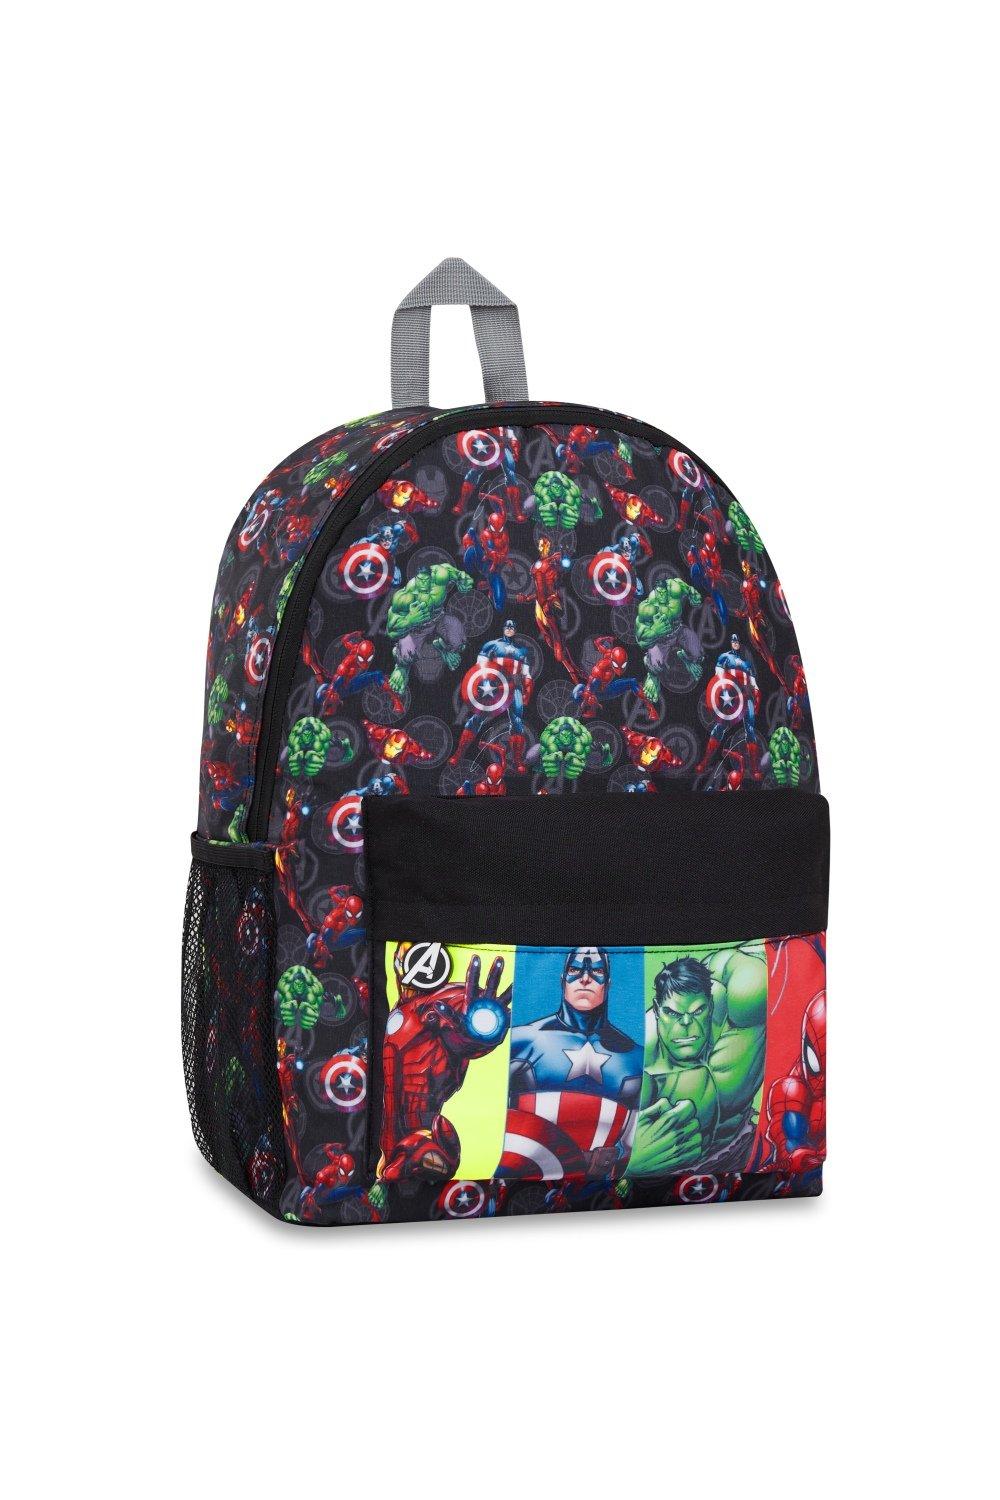 Рюкзак школы Мстителей Marvel, мультиколор детский рюкзак с вышивкой детский рюкзак плюшевый рюкзак с мягкой куклой маленьким медведем с именем на заказ для 1 6 девочек и мальчиков